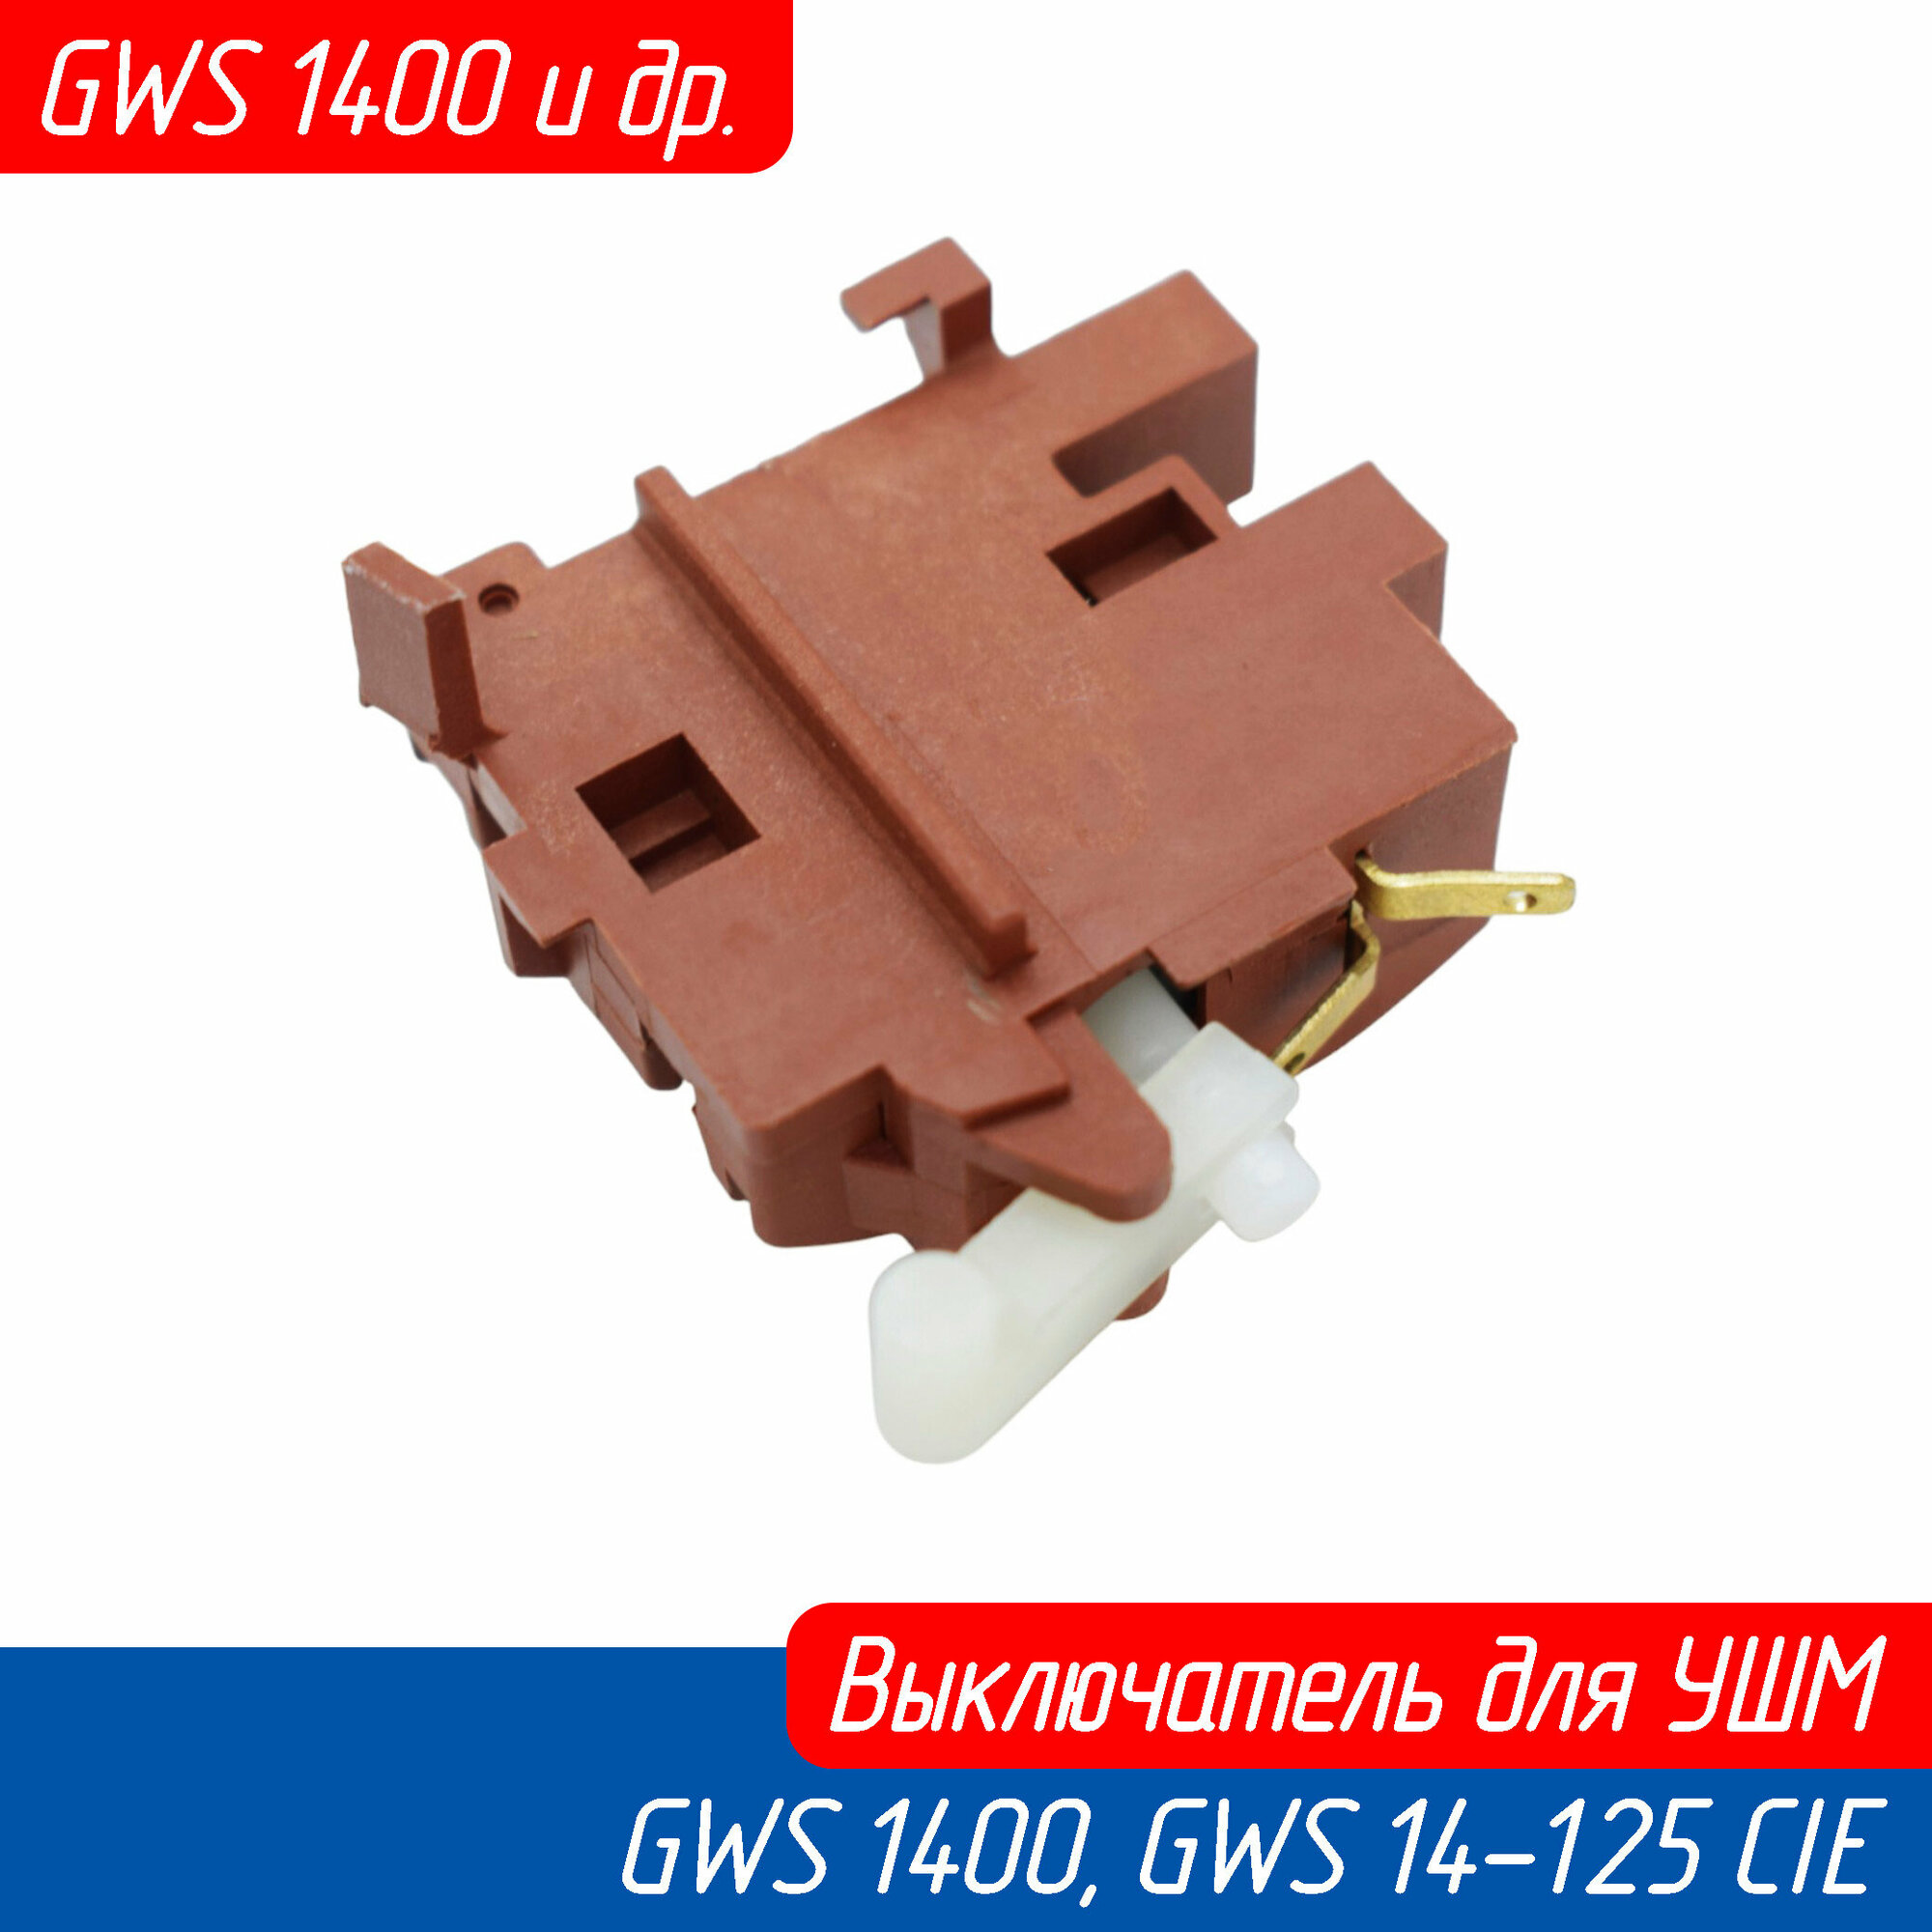 Выключатель кнопка для болгарки (УШМ) Bosch GWS 1400 GWS 14-125 CIE (1607200200 AEZ)